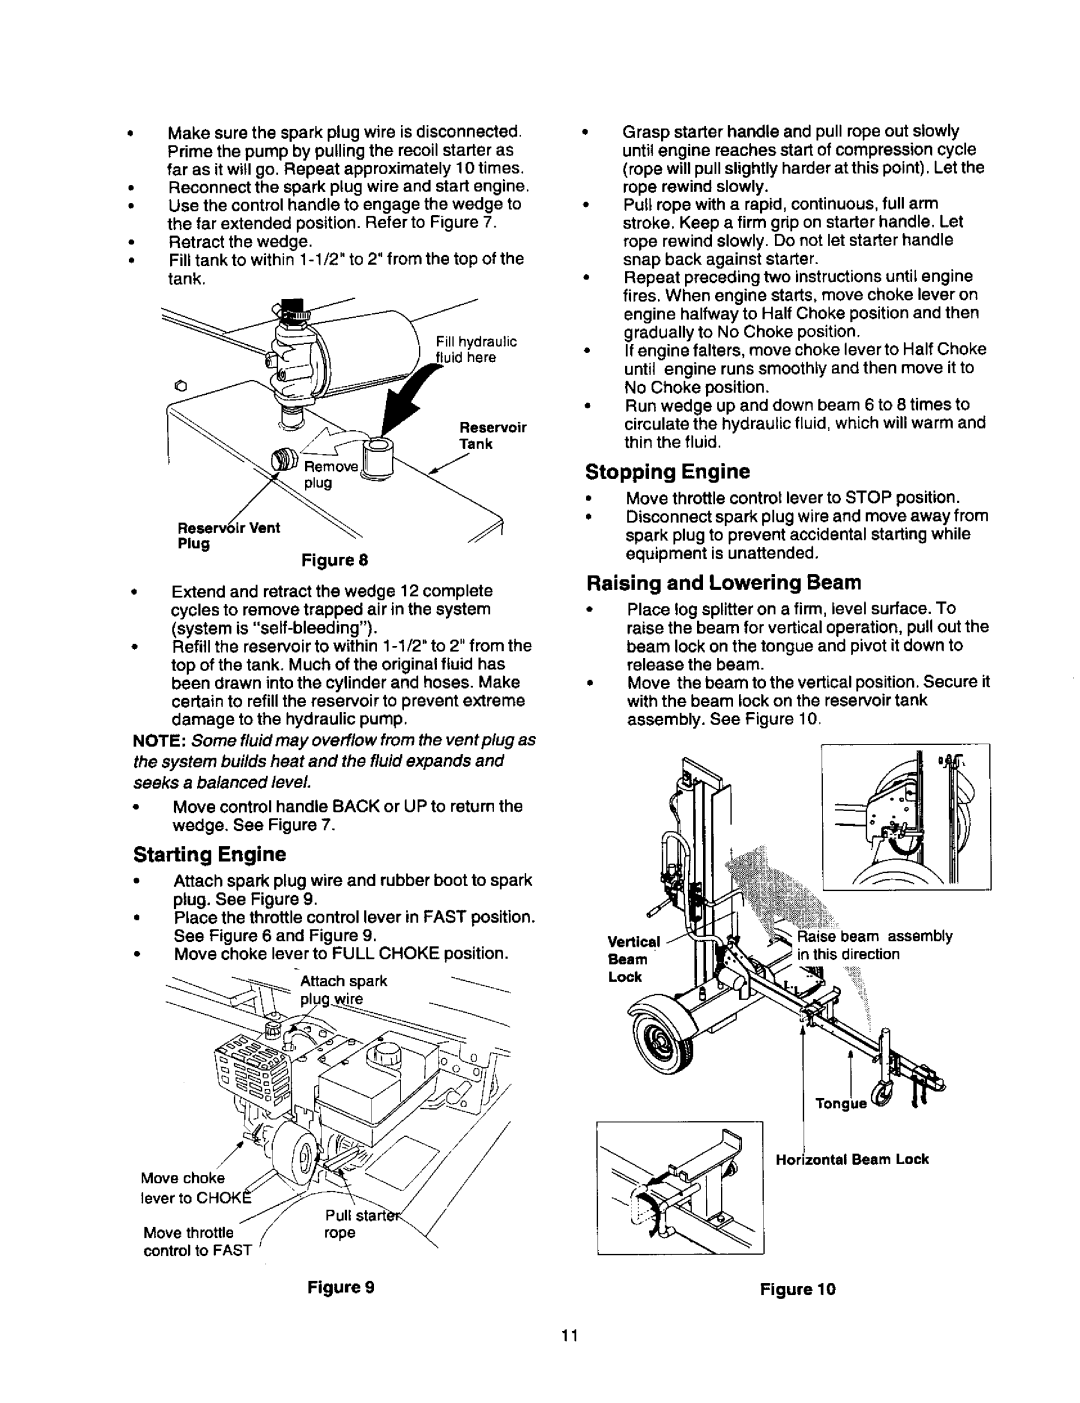 Craftsman 247.79452 owner manual Starting Engine, Stopping Engine, Raising and Lowering Beam 